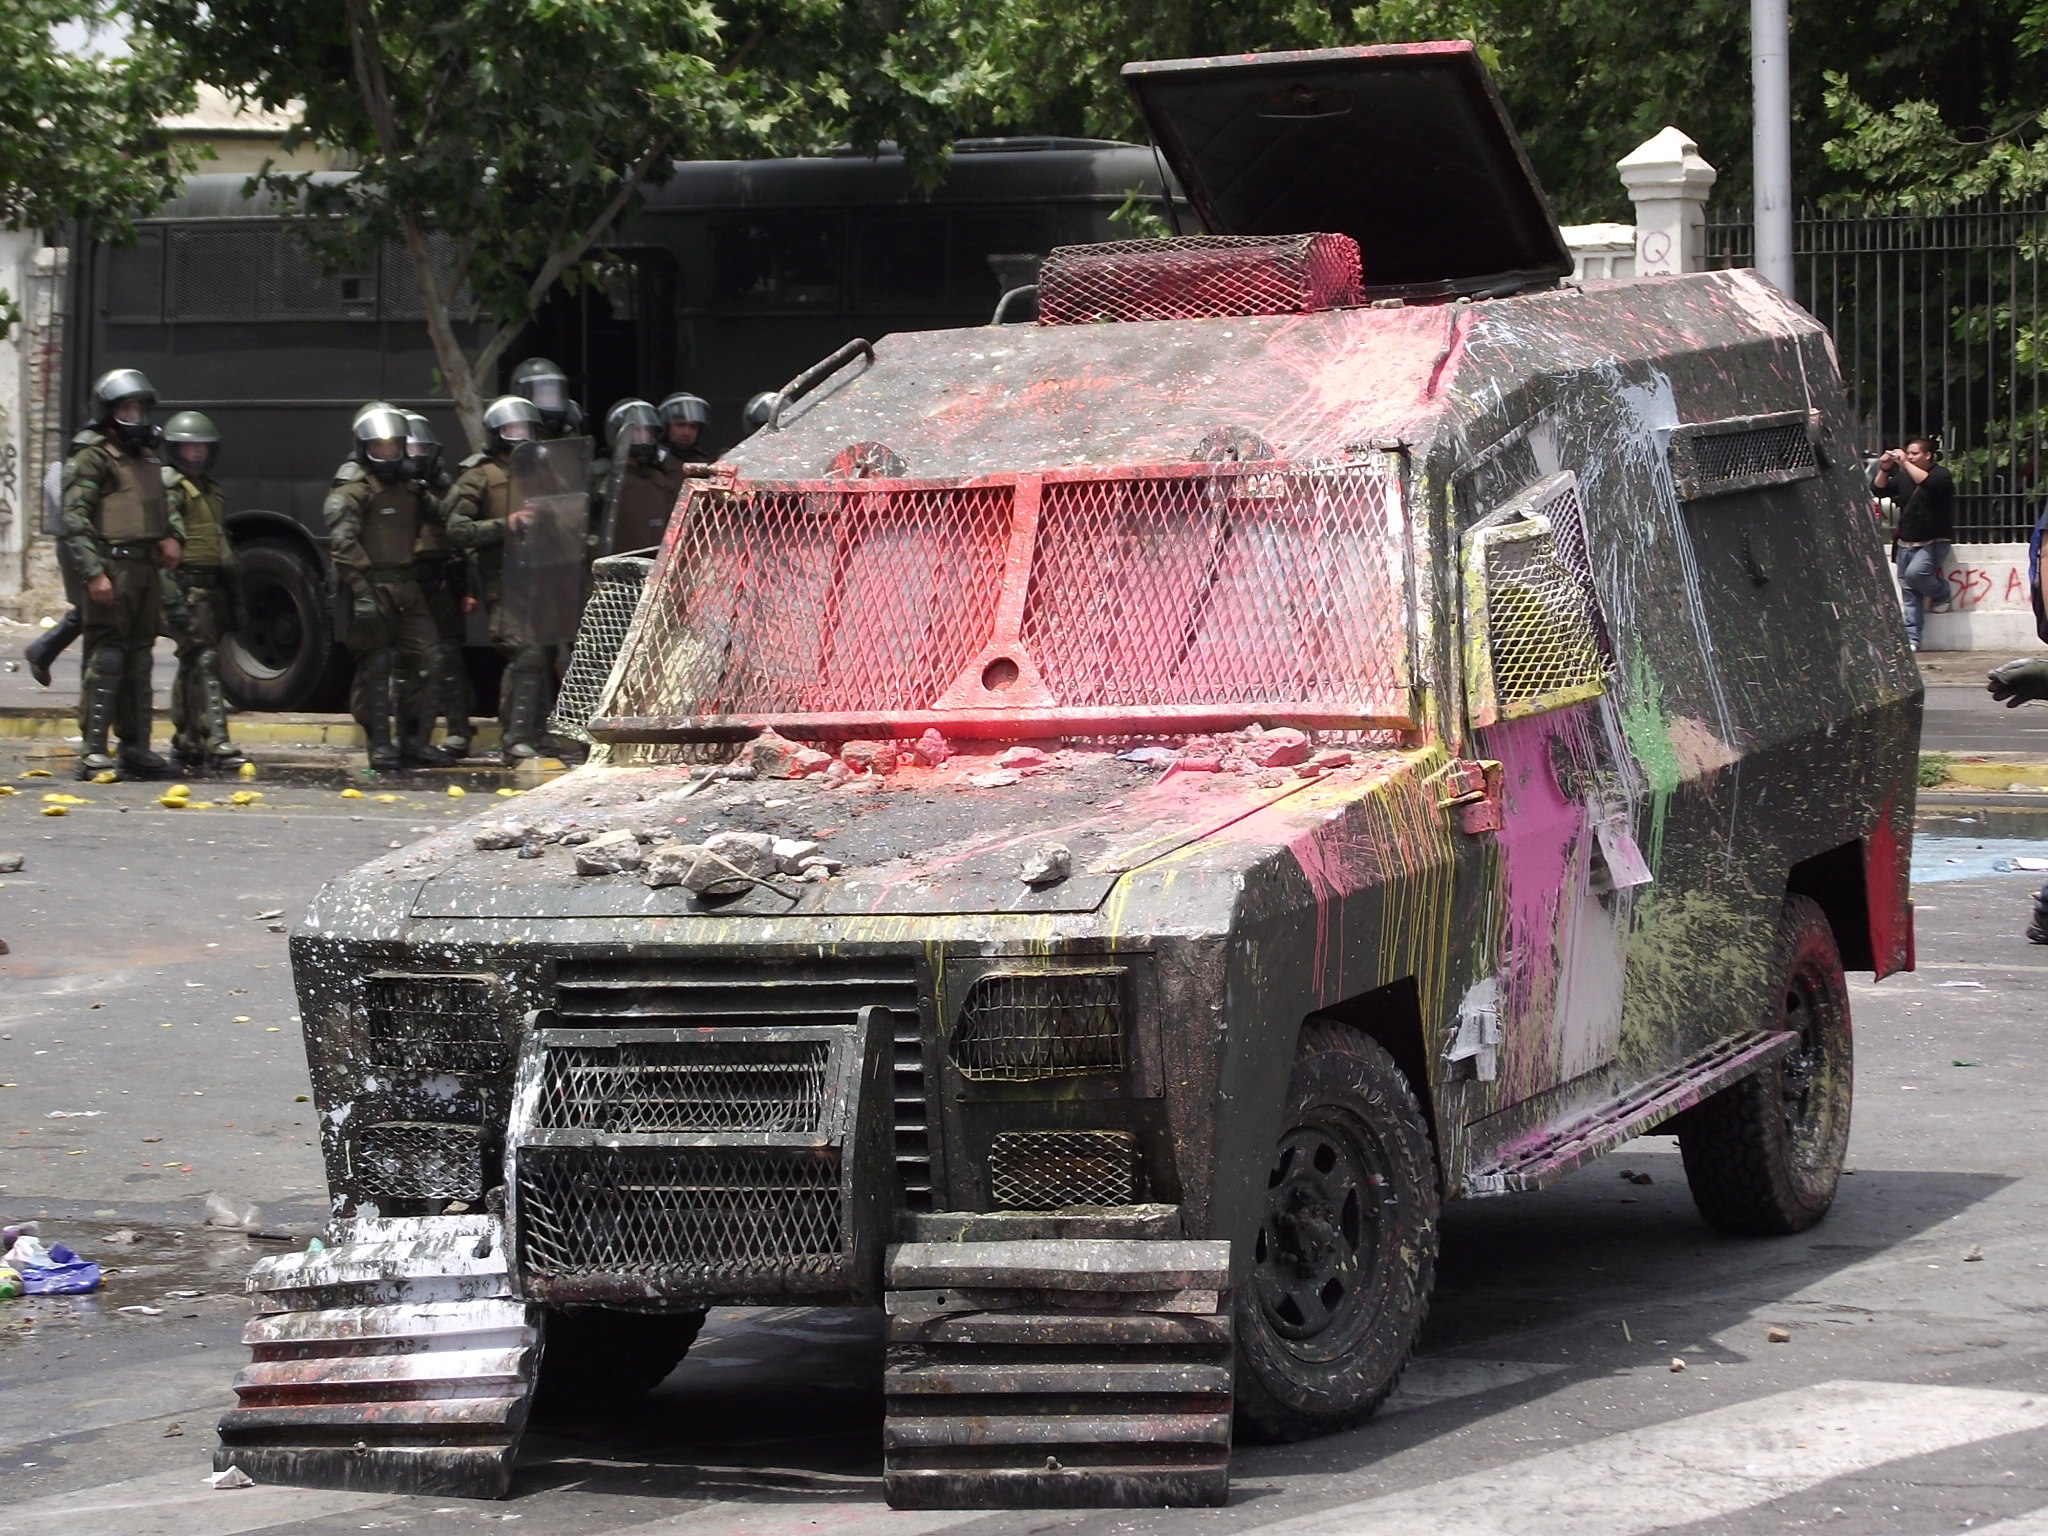 Vehiculo anti-motín transformado por los manifestantes